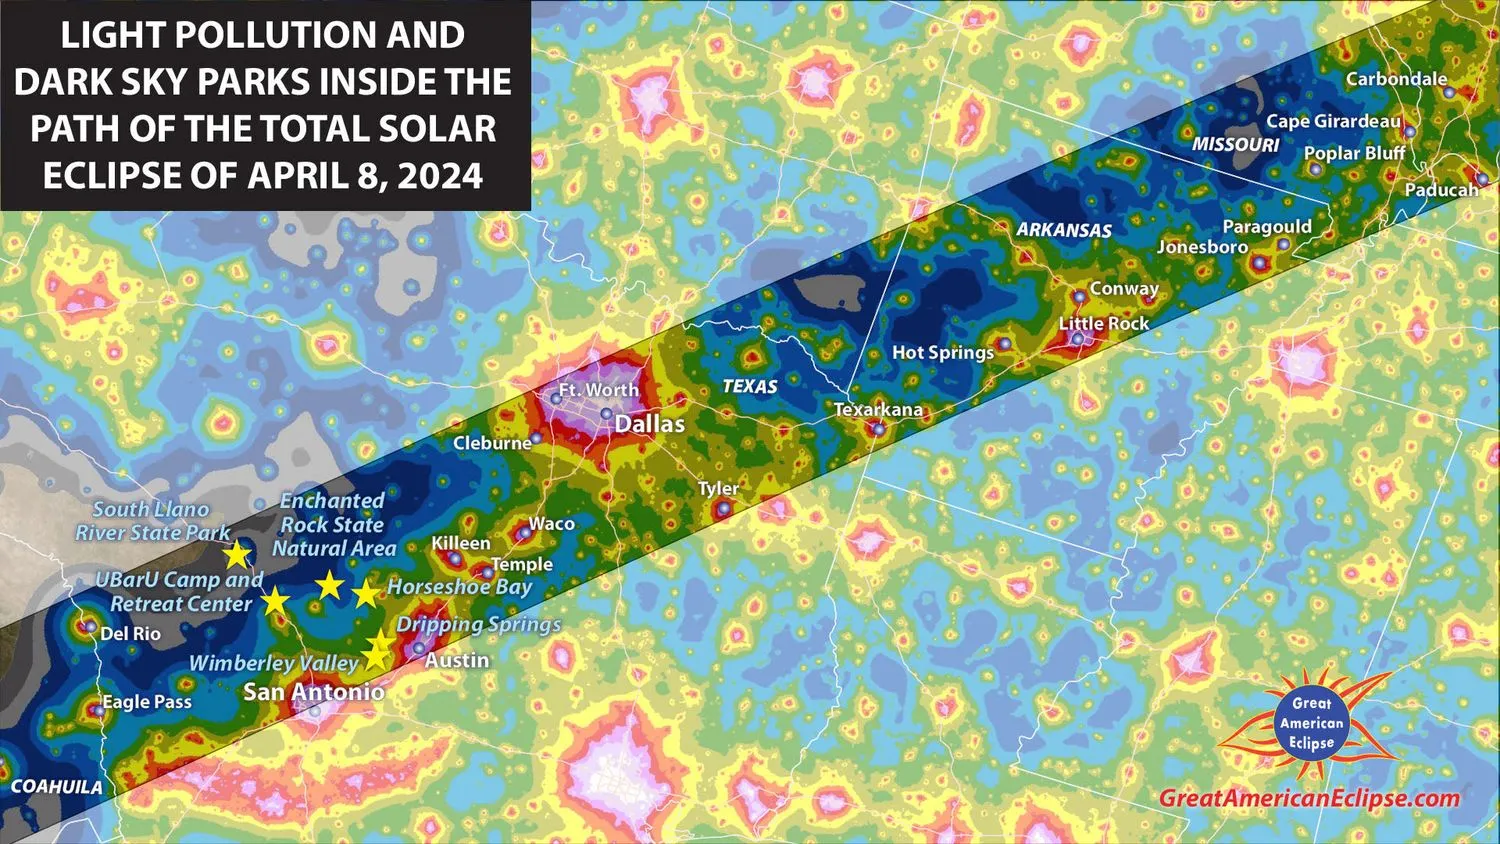 Eine Karte, die die Lichtverschmutzung und die Dark Sky Parks innerhalb des Totalitätspfads zeigt.